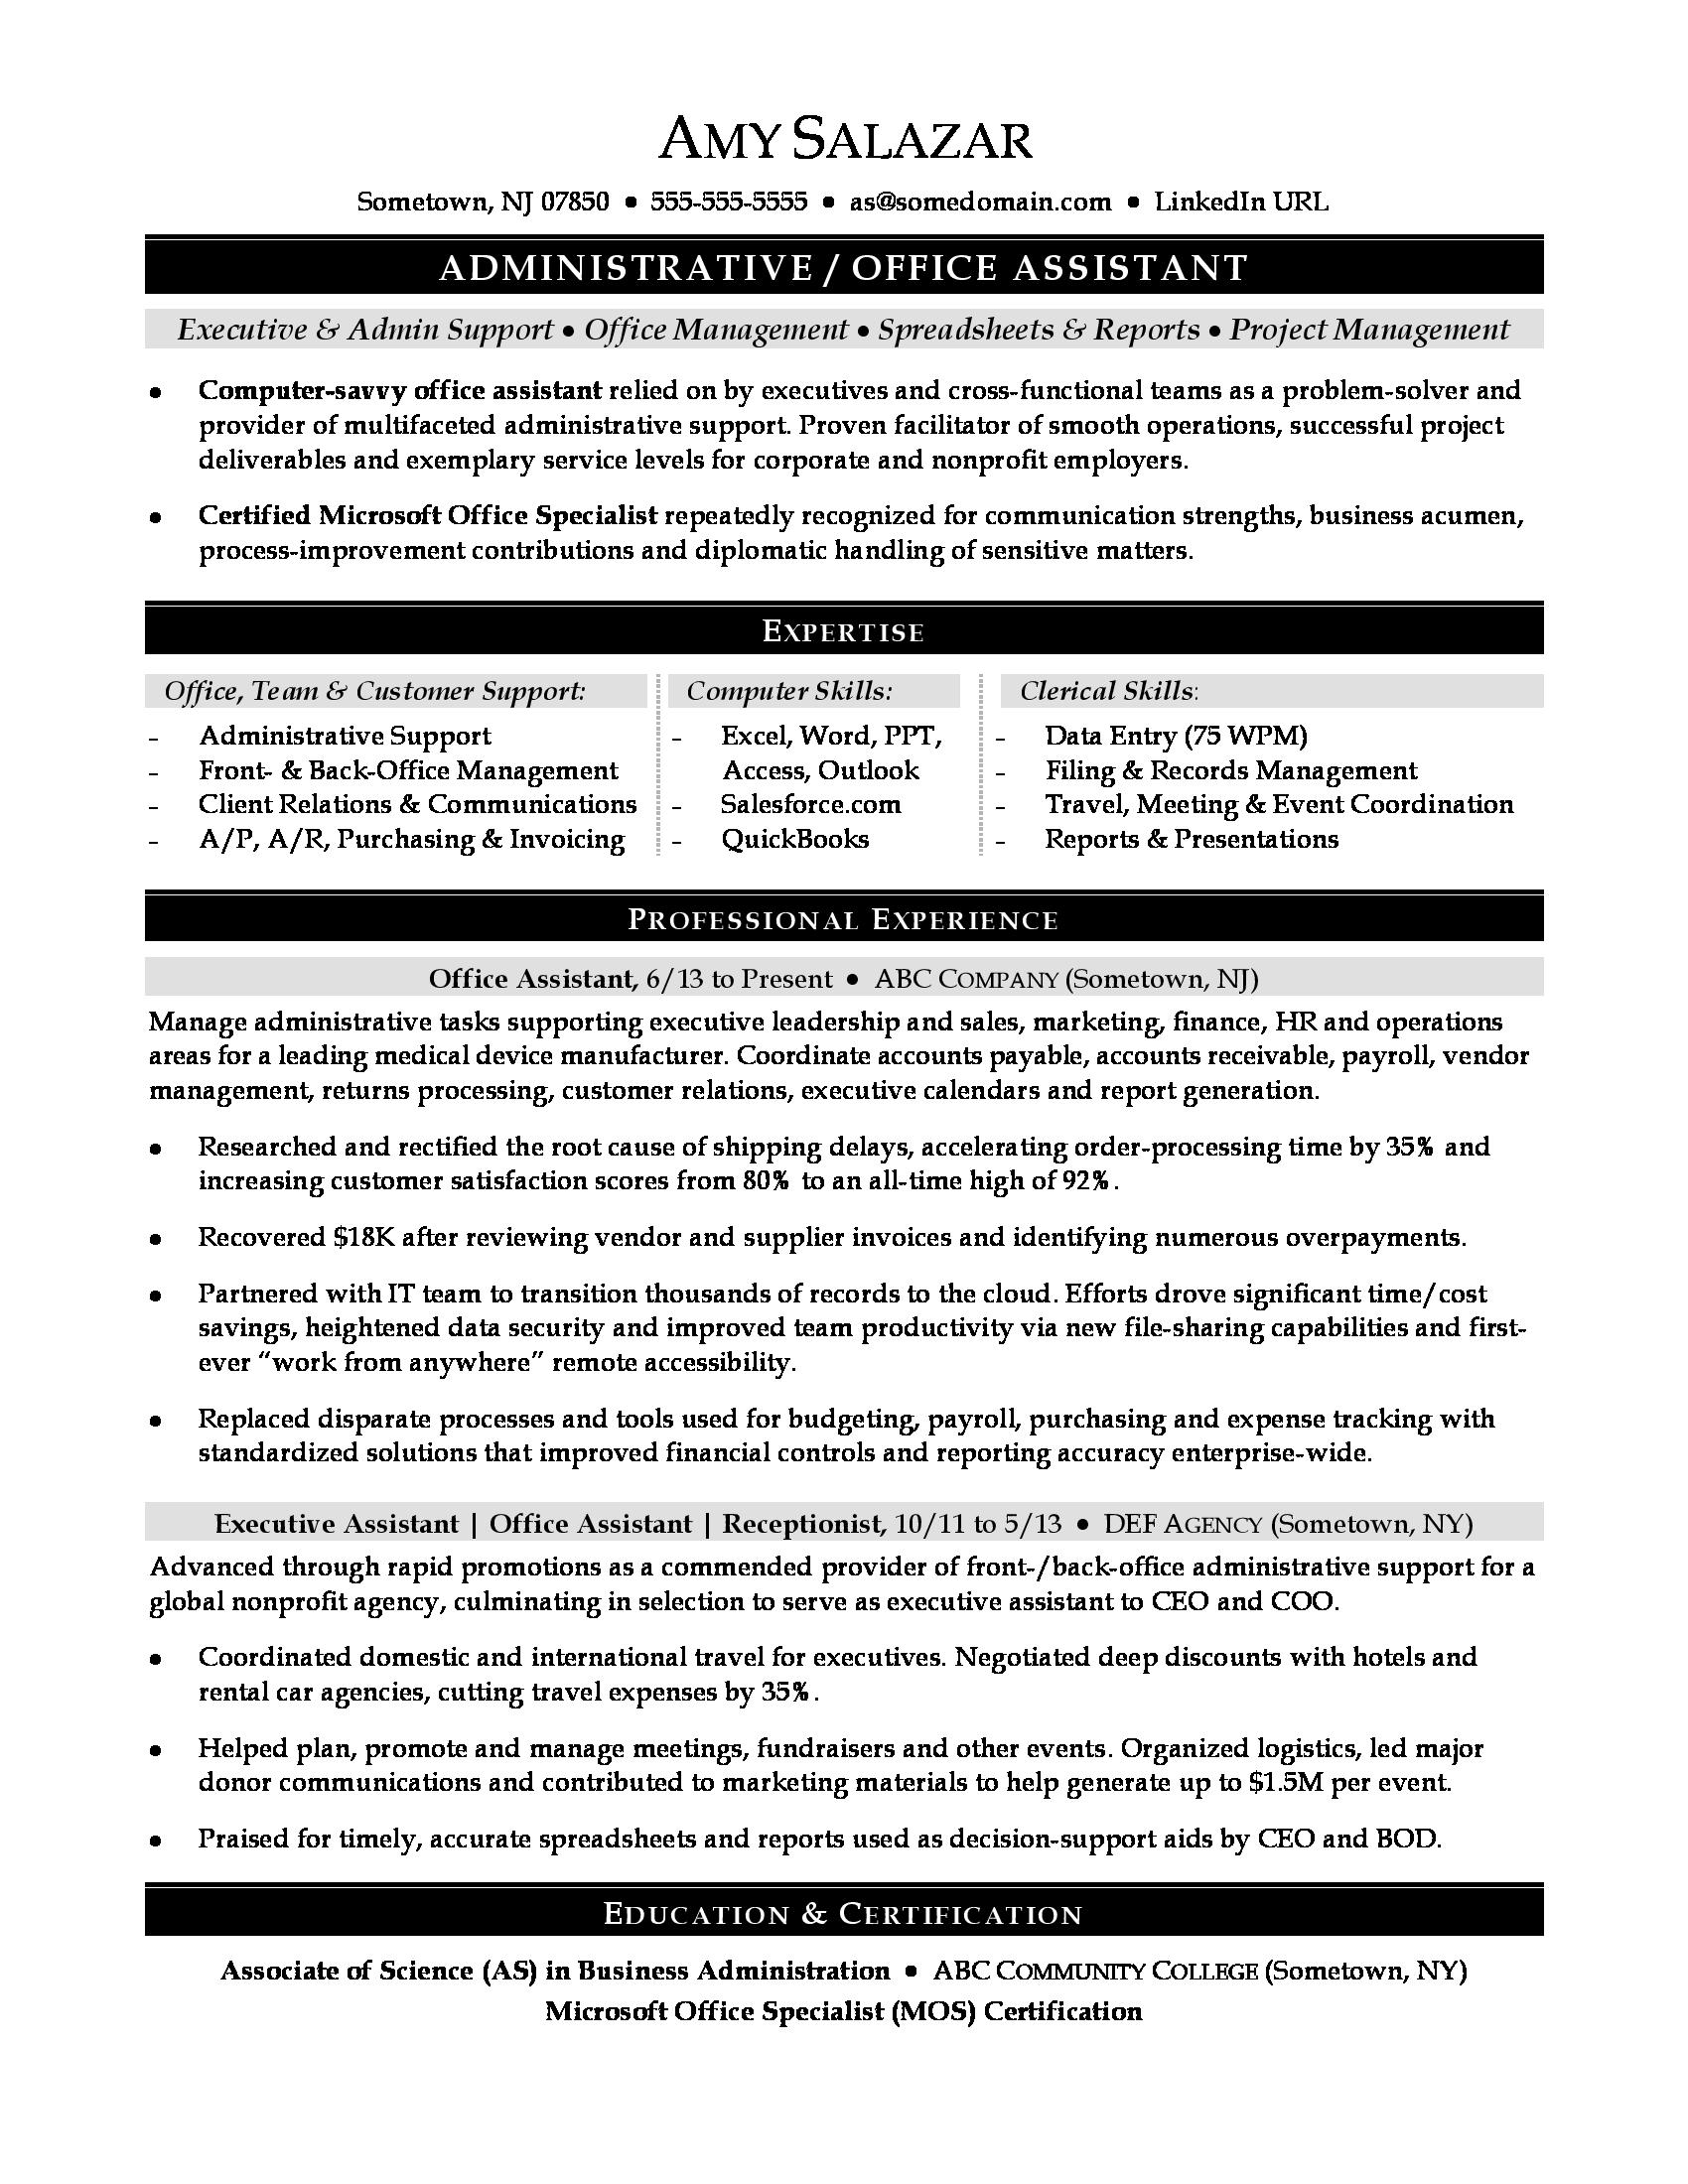 Office Assistant Resume Office Assistant office assistant resume|wikiresume.com